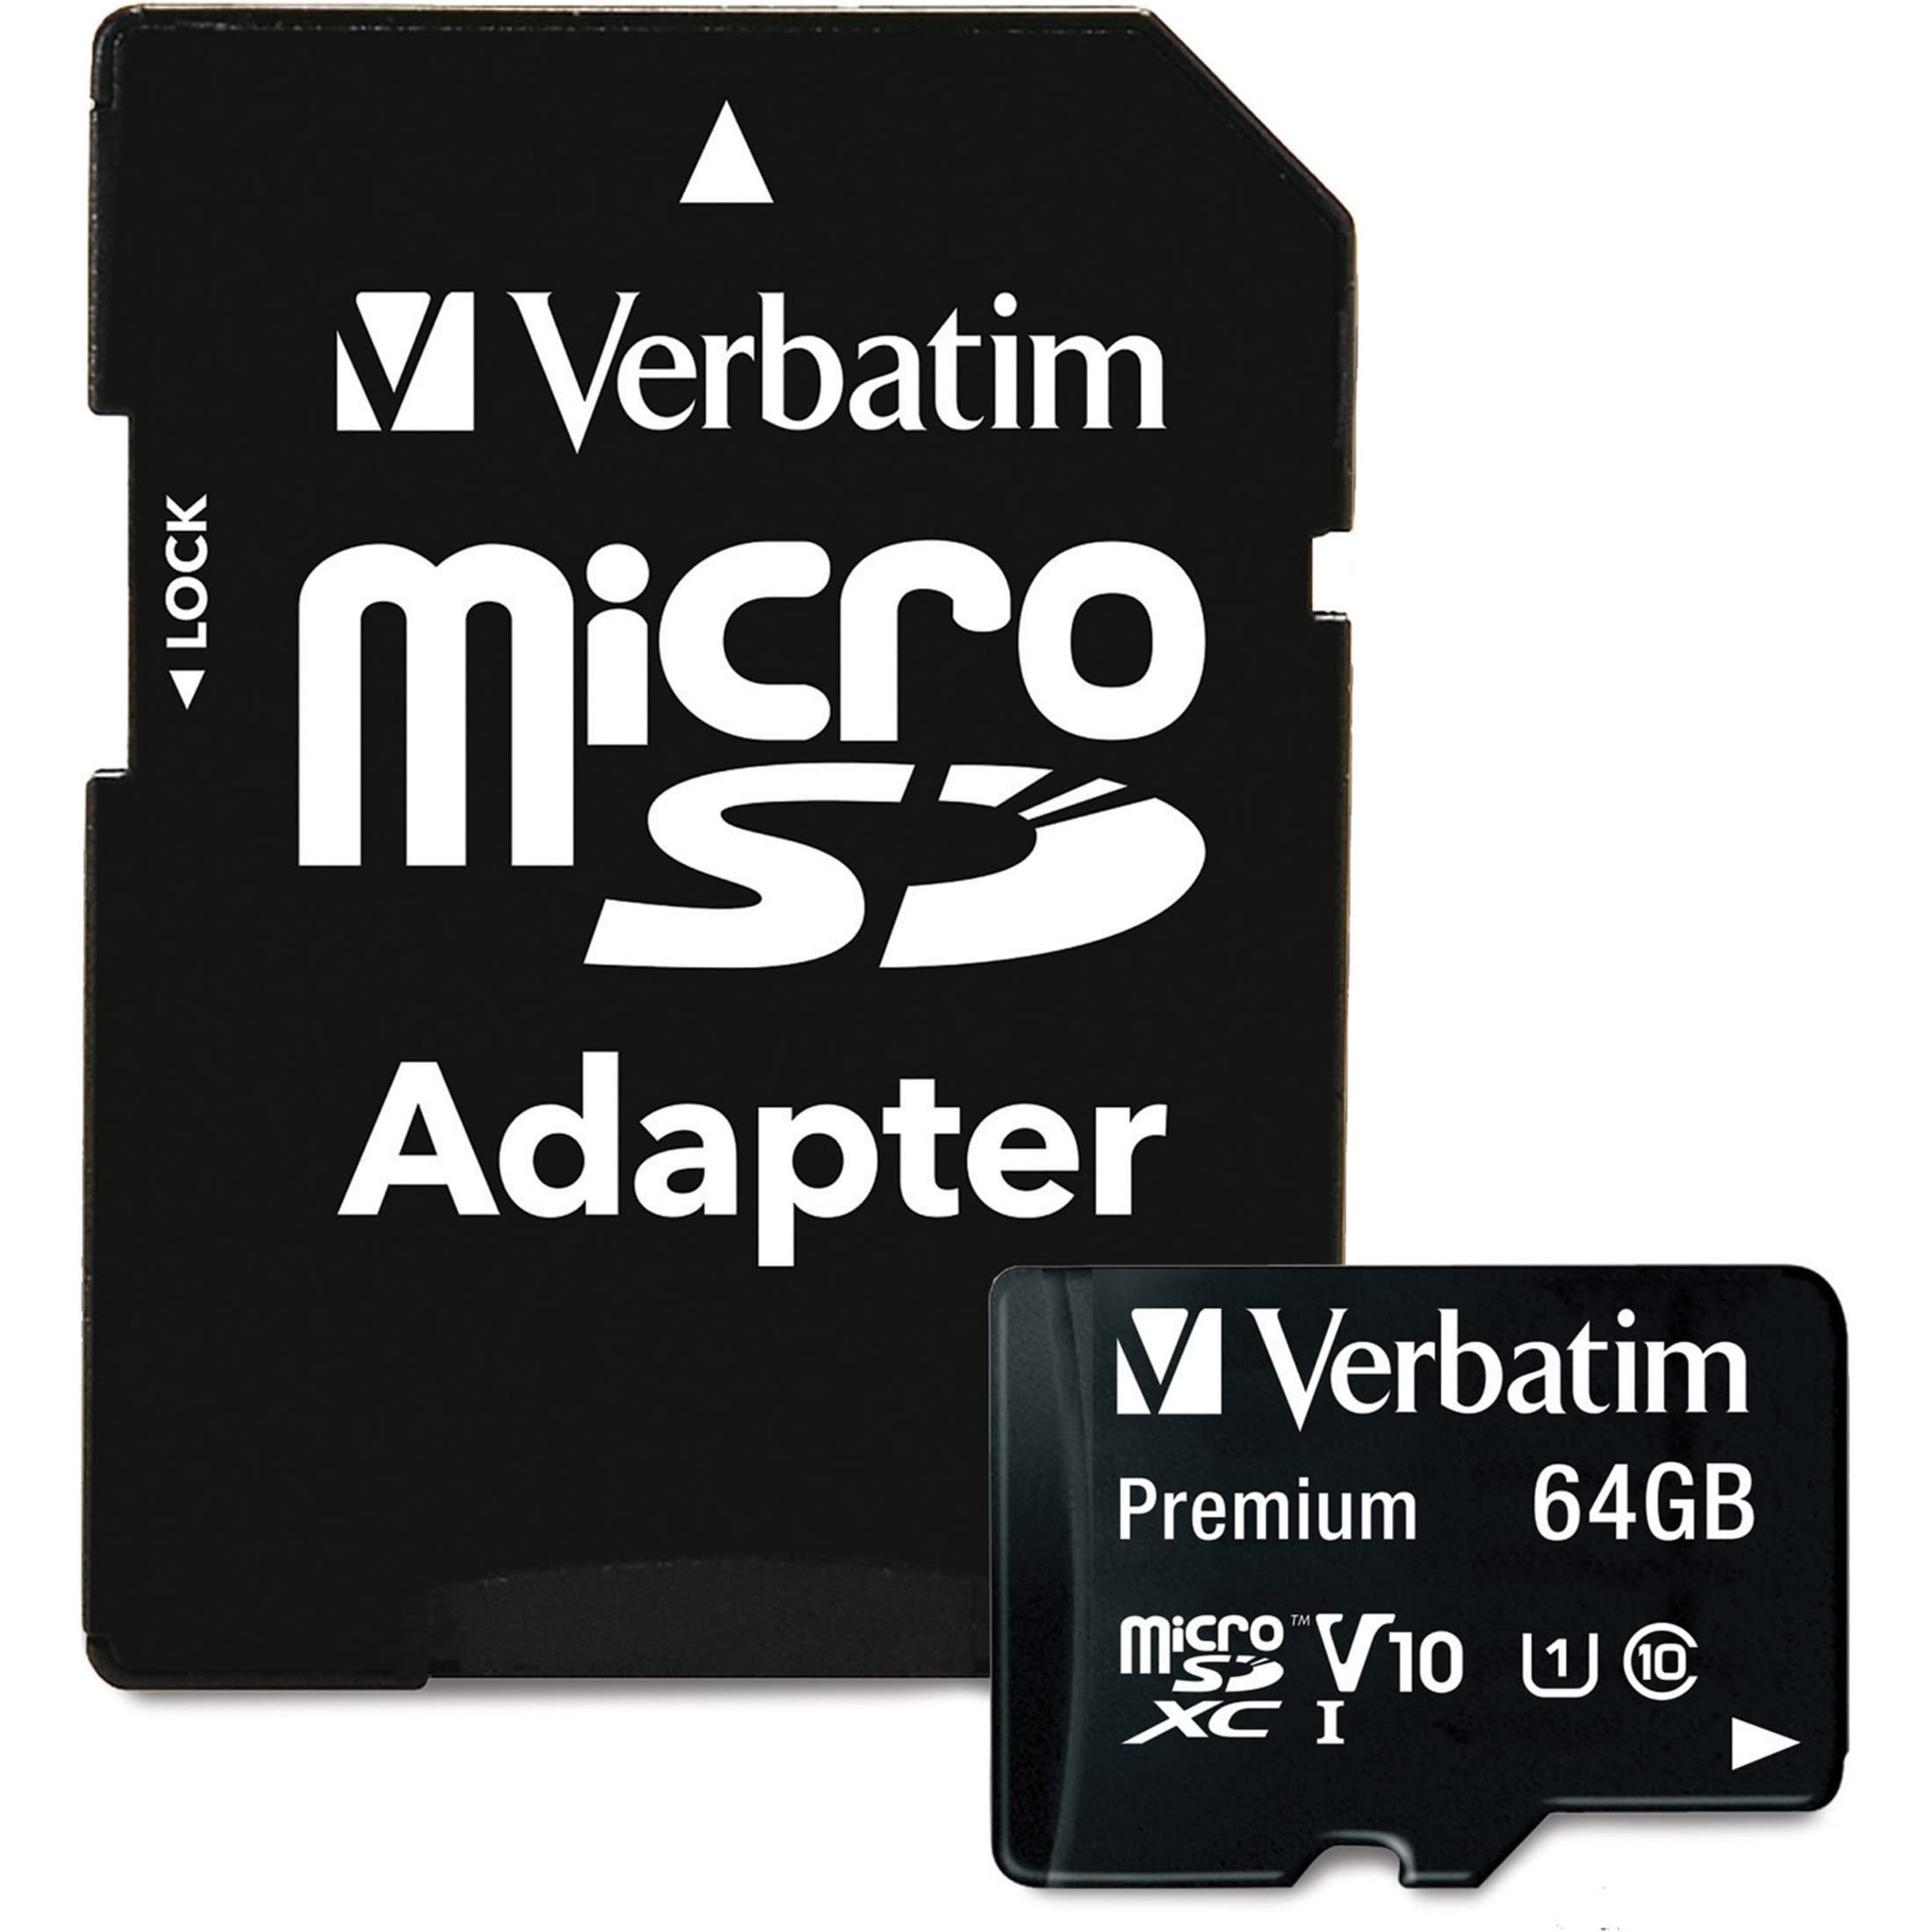 MICROSDXC PREMIUM VERBATIM 64GB CLASE 10 MICROSDXC PREMIUM VERBATIM 64 GB CON ADAPTADOR, UHS-I V10 U1 CLASE 10                                                                                                                                                                                           CON ADAPTADOR                            - 44084